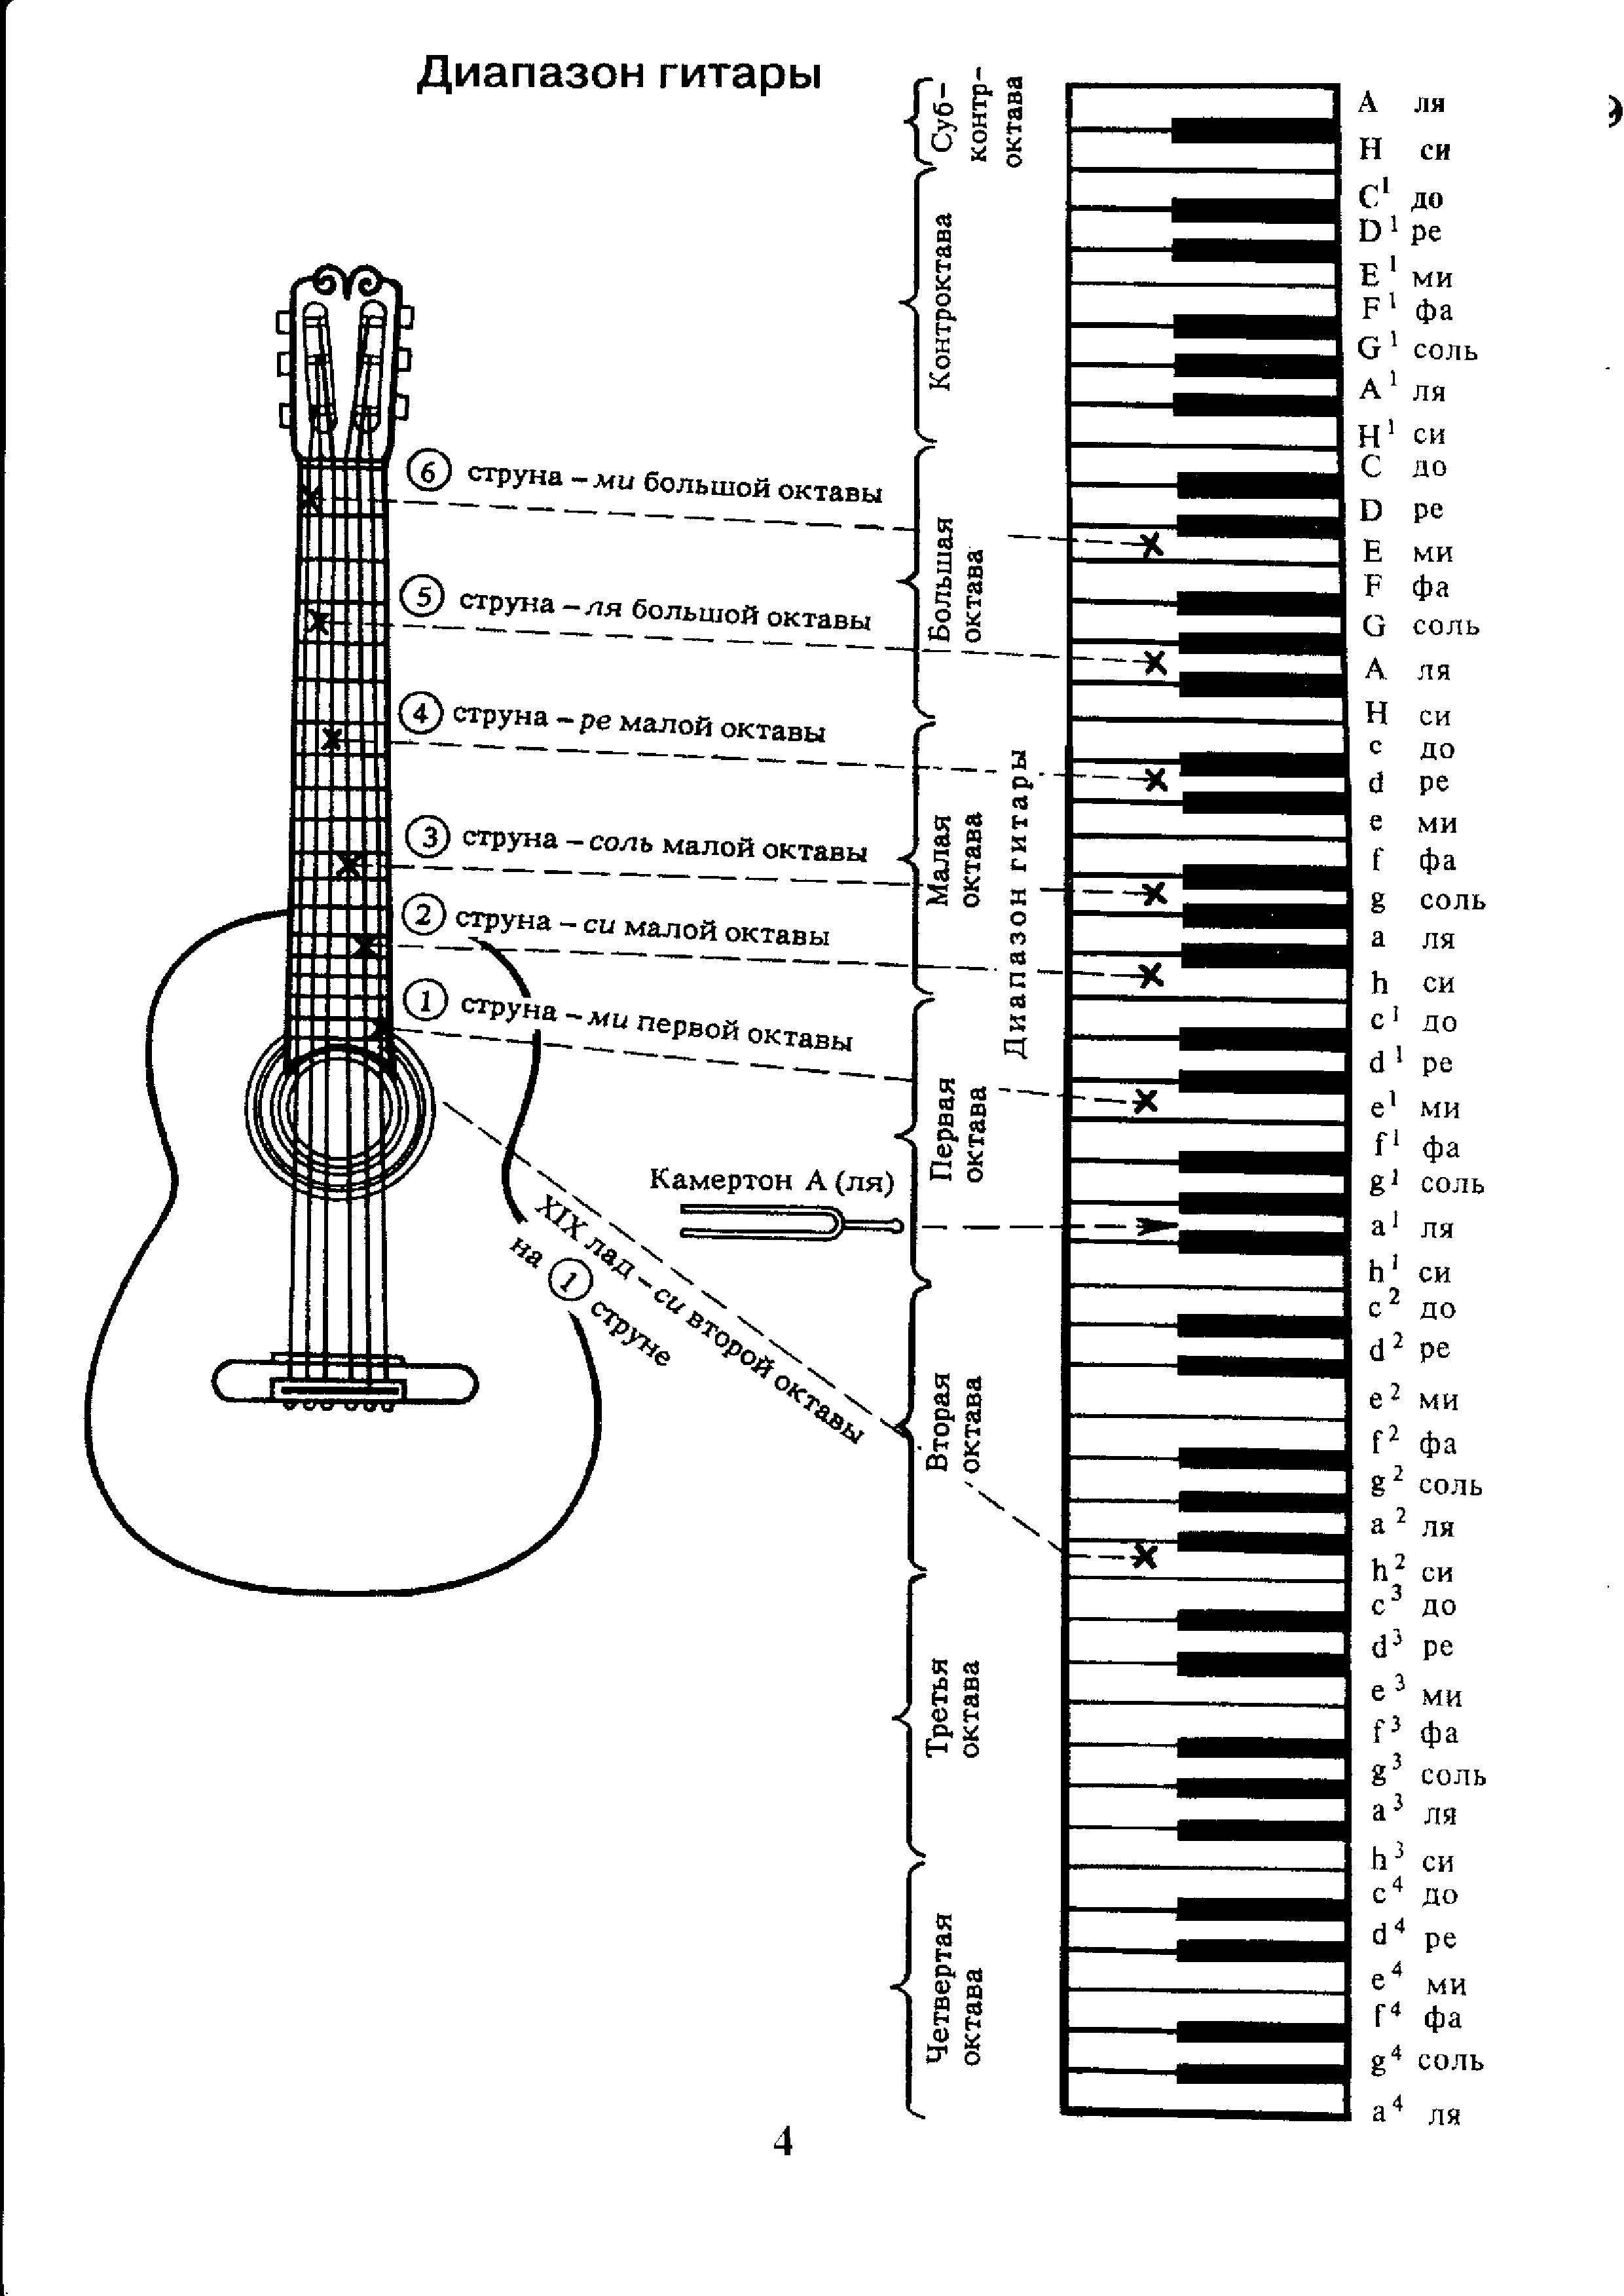 Шестиструнная играй песня. Аппликатура аккордов для гитары 6 струн для начинающих. Ноты на гитарном грифе 6 струнной. Лады на 6 струнной гитаре для начинающих. Схема гитары классической 6 струнной.